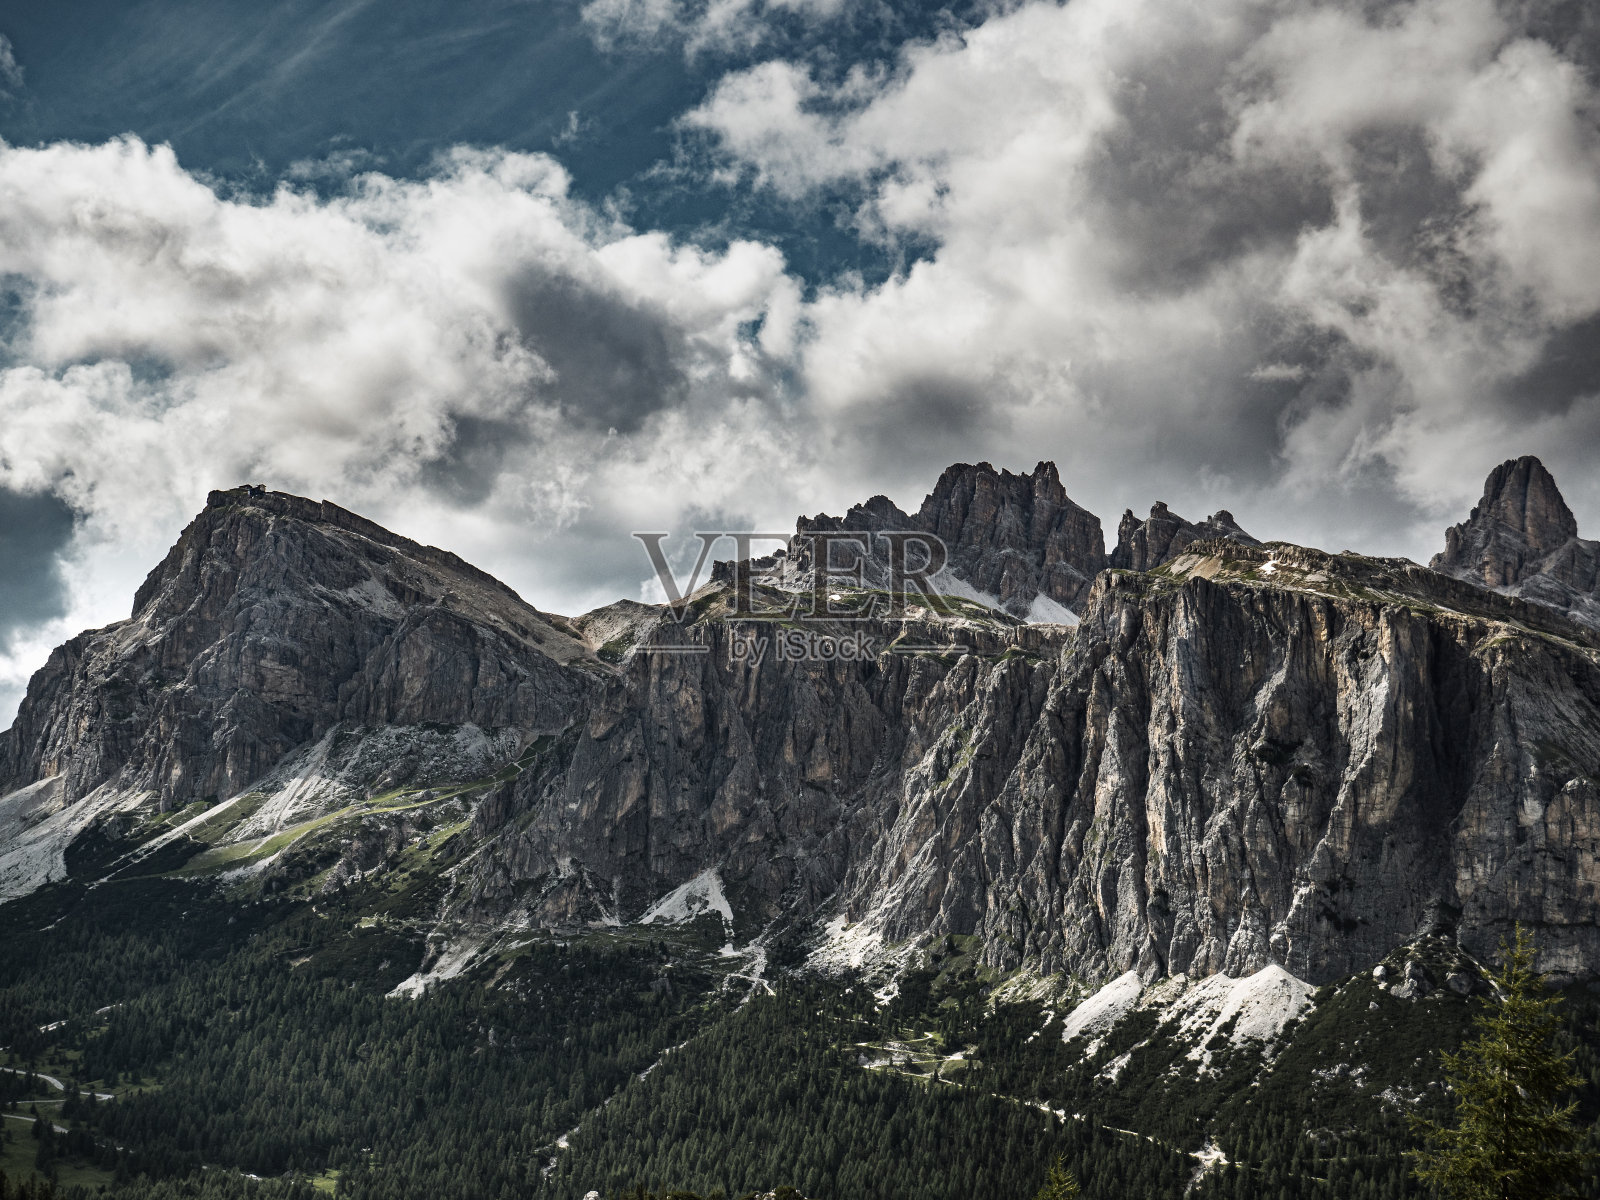 Falzarego山口的意大利白云石照片摄影图片